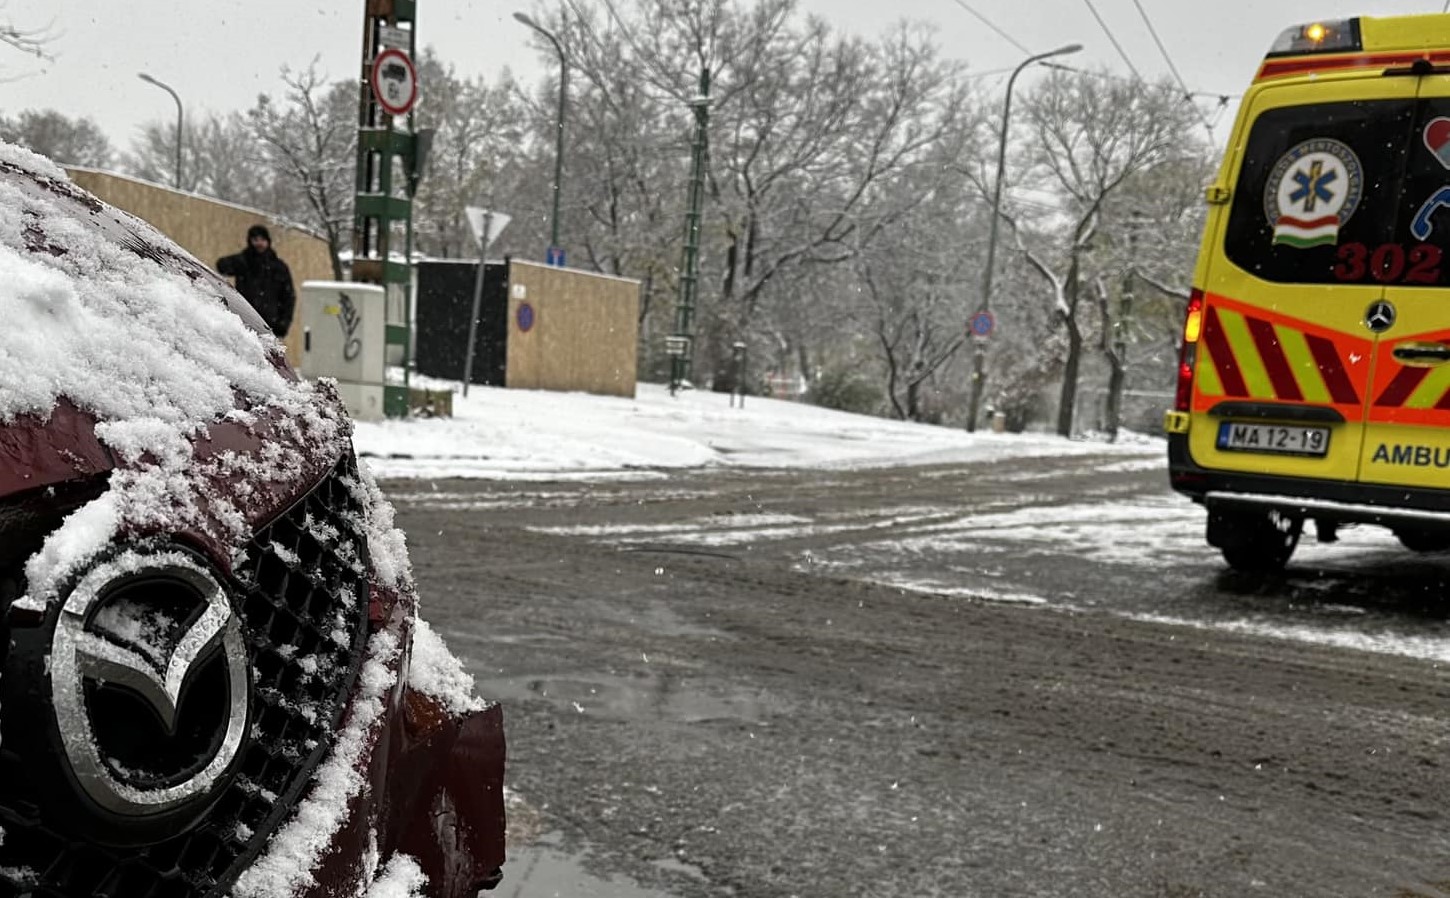 Havazás Budapesten: egy gyereket szállító mentőbe rongyolt bele egy autó Zuglóban